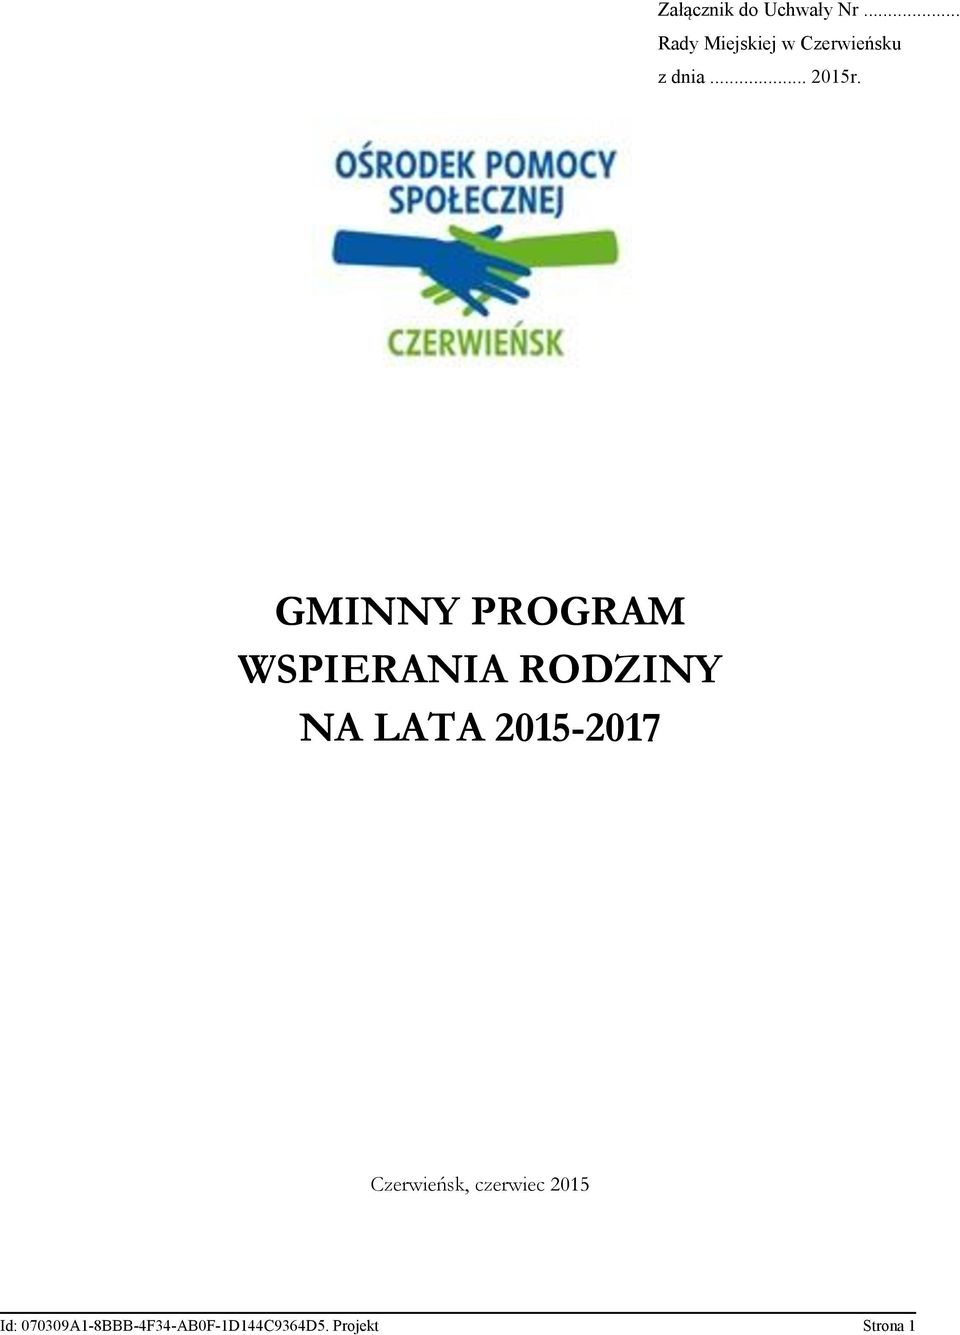 GMINNY PROGRAM WSPIERANIA RODZINY NA LATA 2015-2017